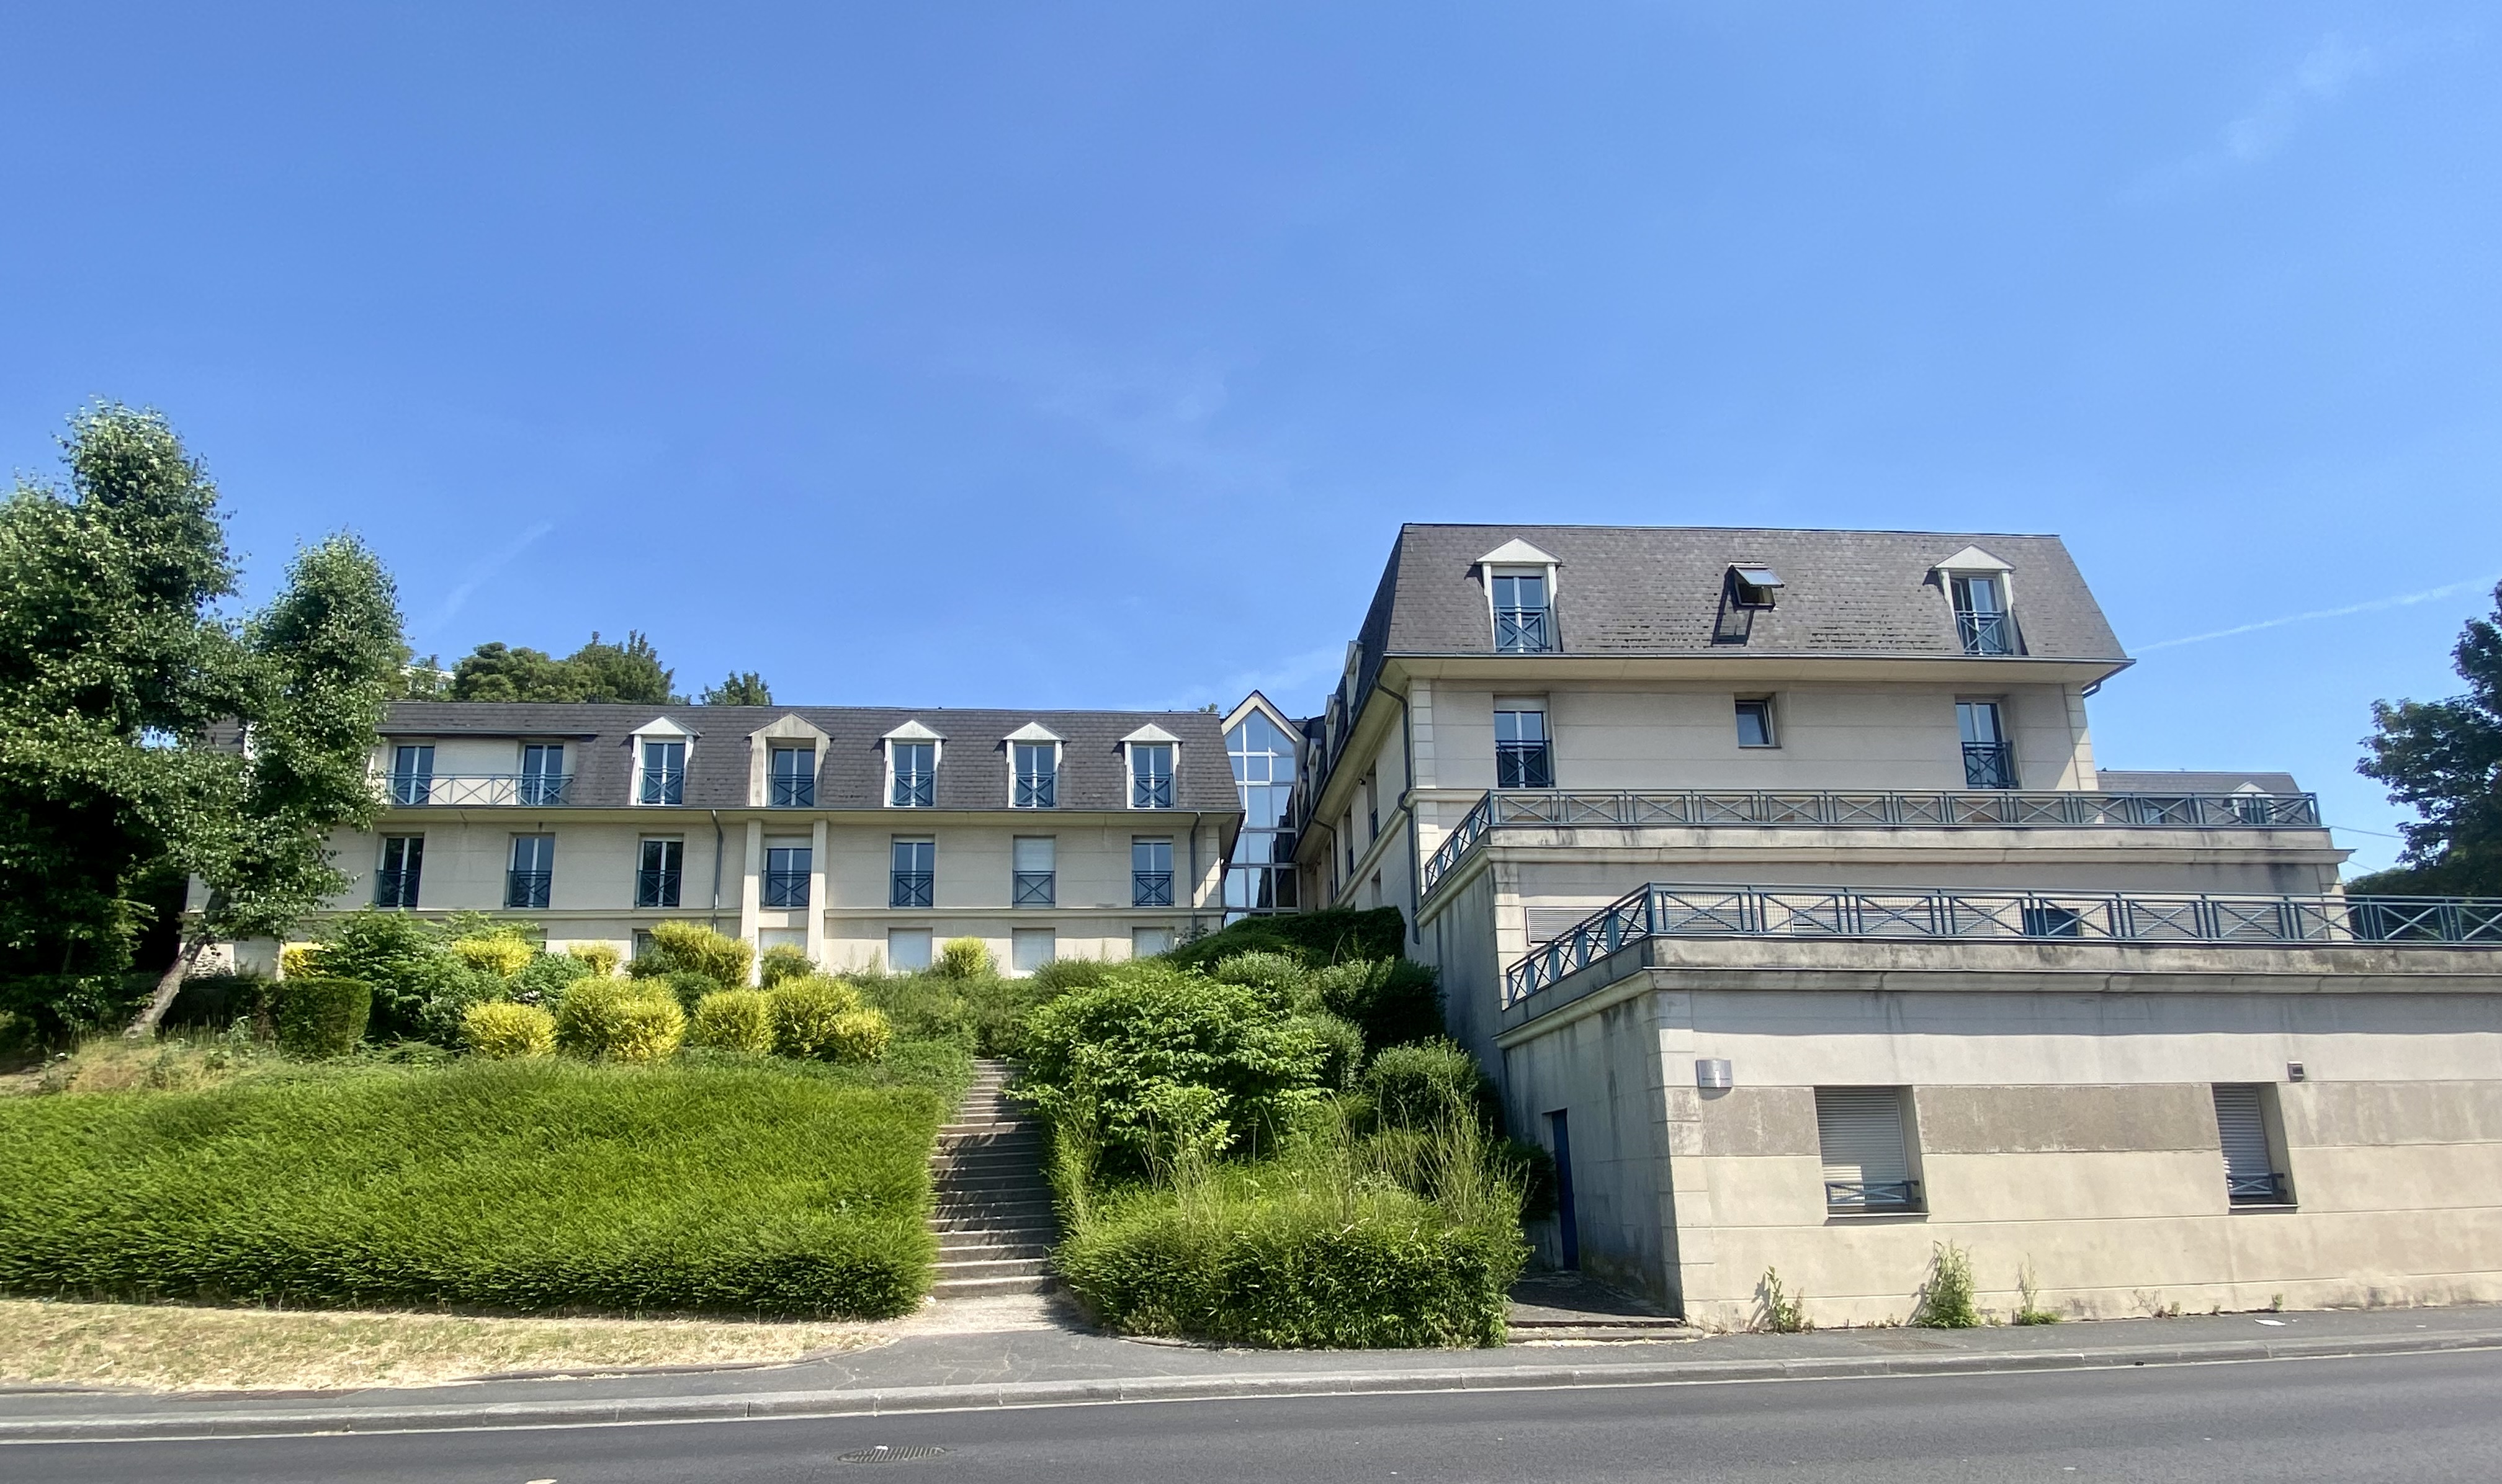 Sortie de bail commercial en résidence-services RESIDE ETUDES à Darnétal (76)